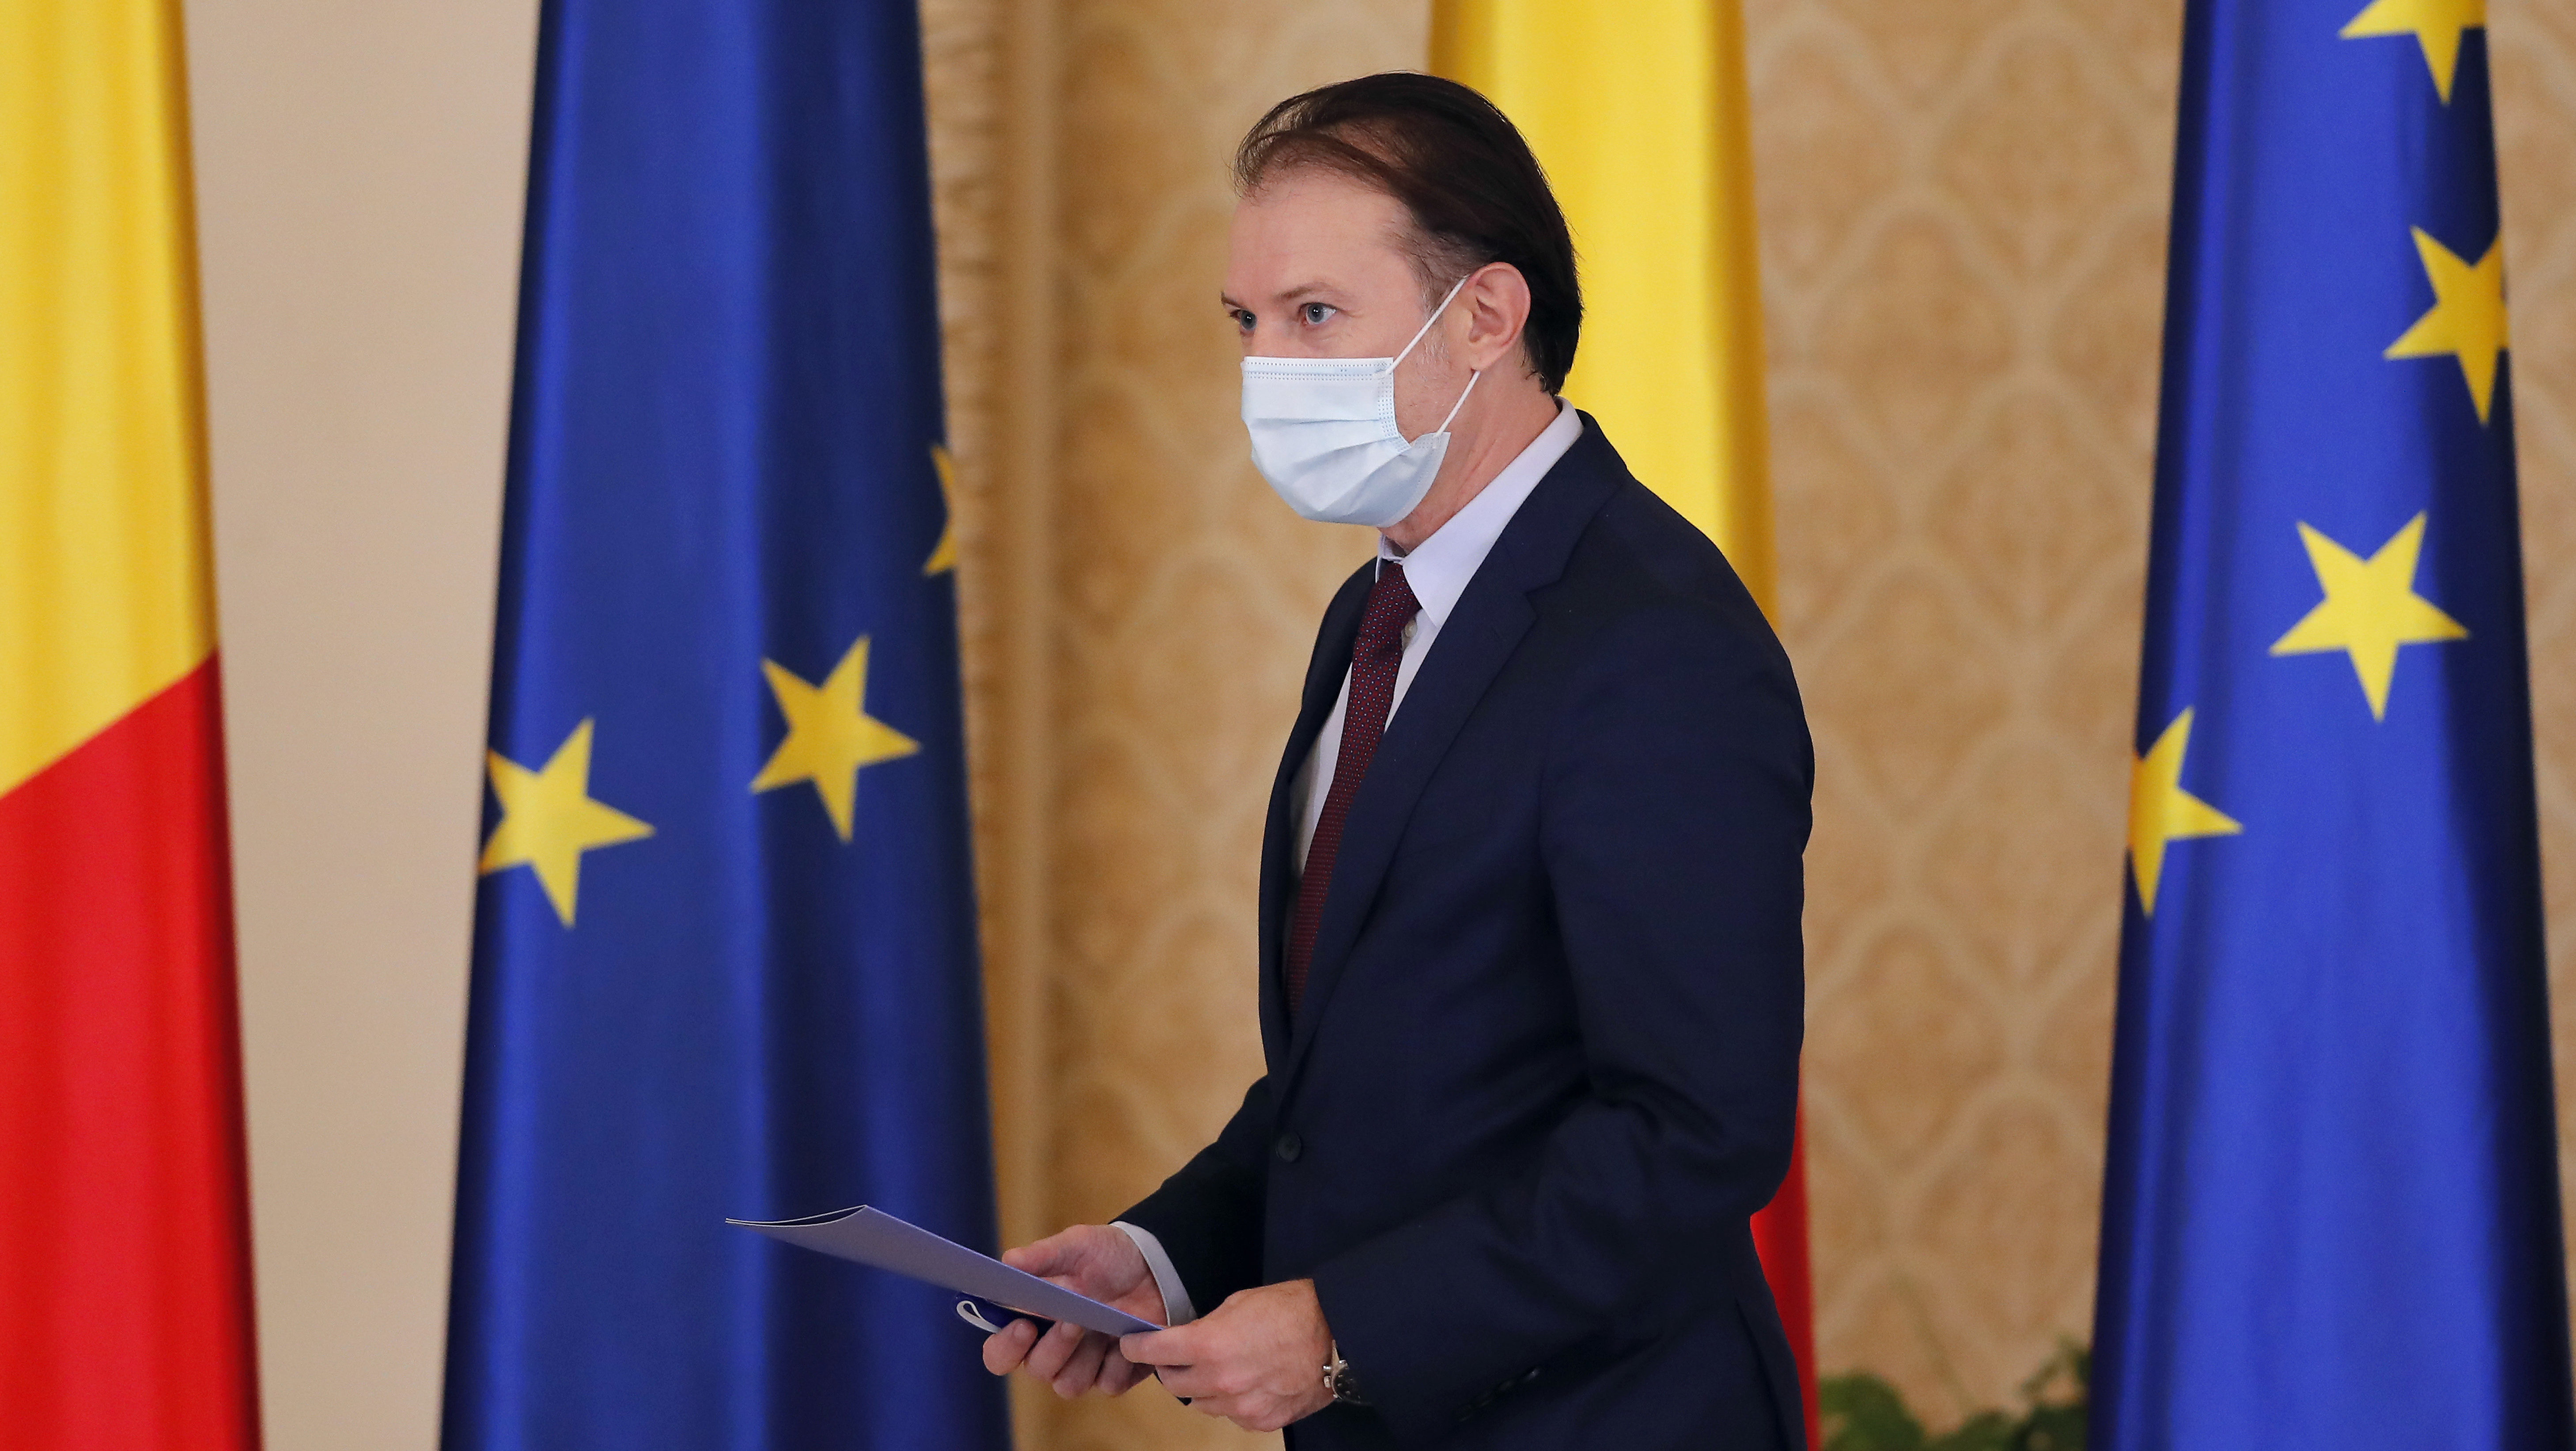 A román kormány takarékossági intézkedéseket vezet be, idén elmarad a nyugdíjemelés is